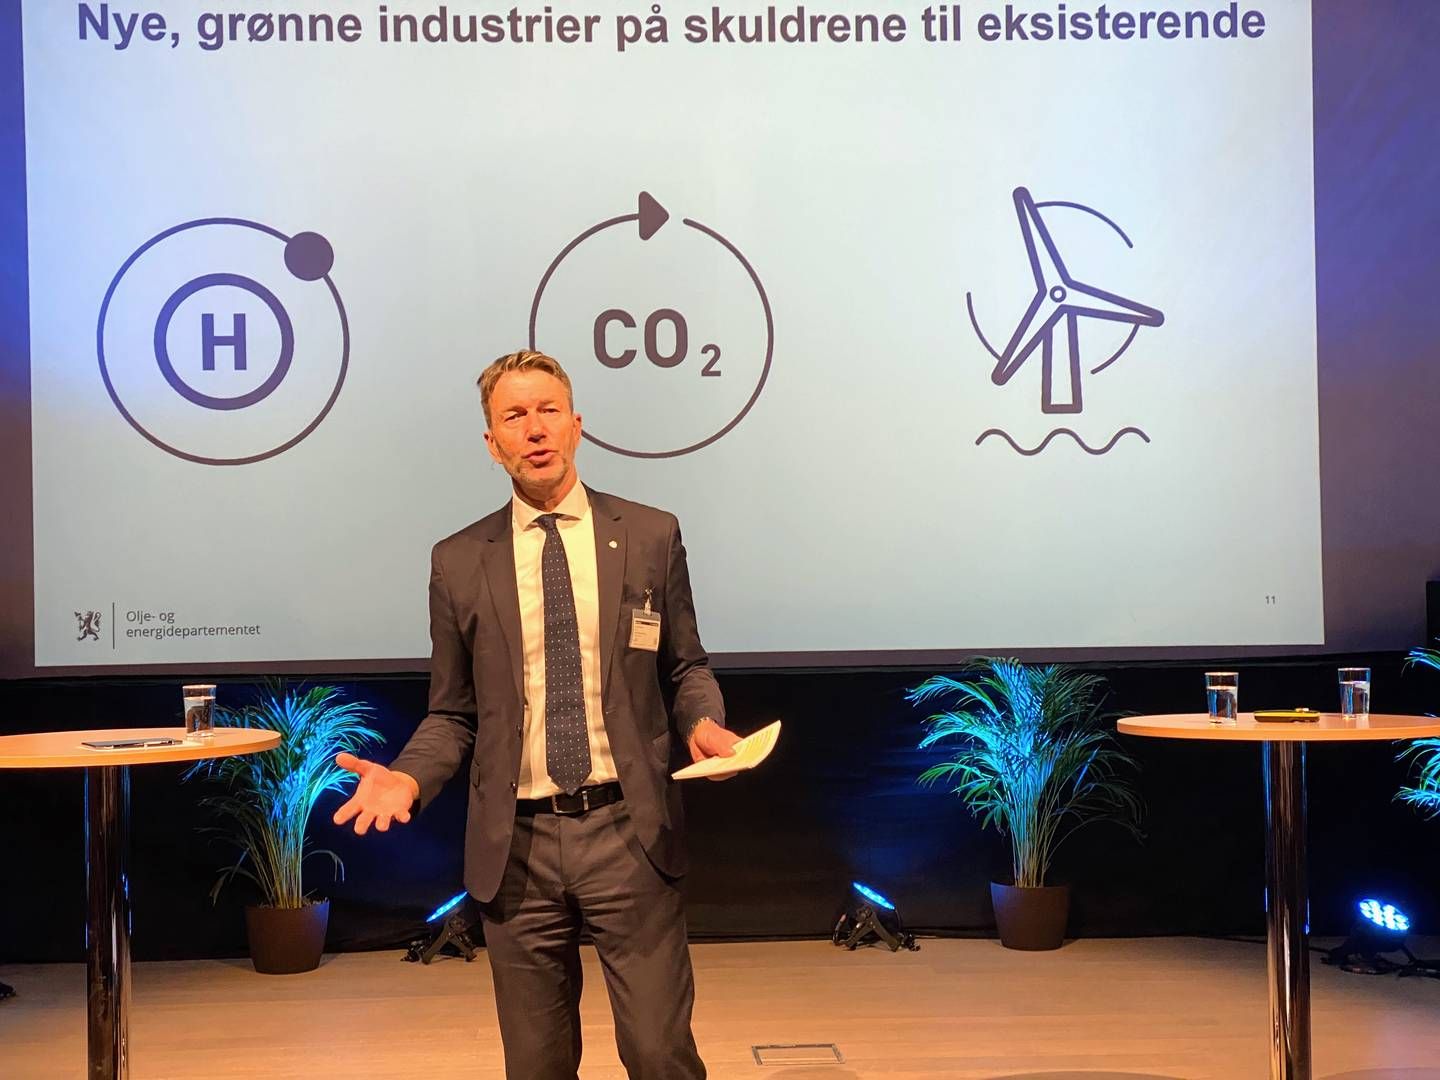 HYDROGEN-RAPPORT: Det er stor usikkerhet knyttet til fremtidig produksjon og forbruk av hydrogen, men olje- og energiminister Terje Aasland trekker frem at det er en viktig byggestein i fremtidens lavutslippssamfunn. | Foto: Anders Lie Brenna